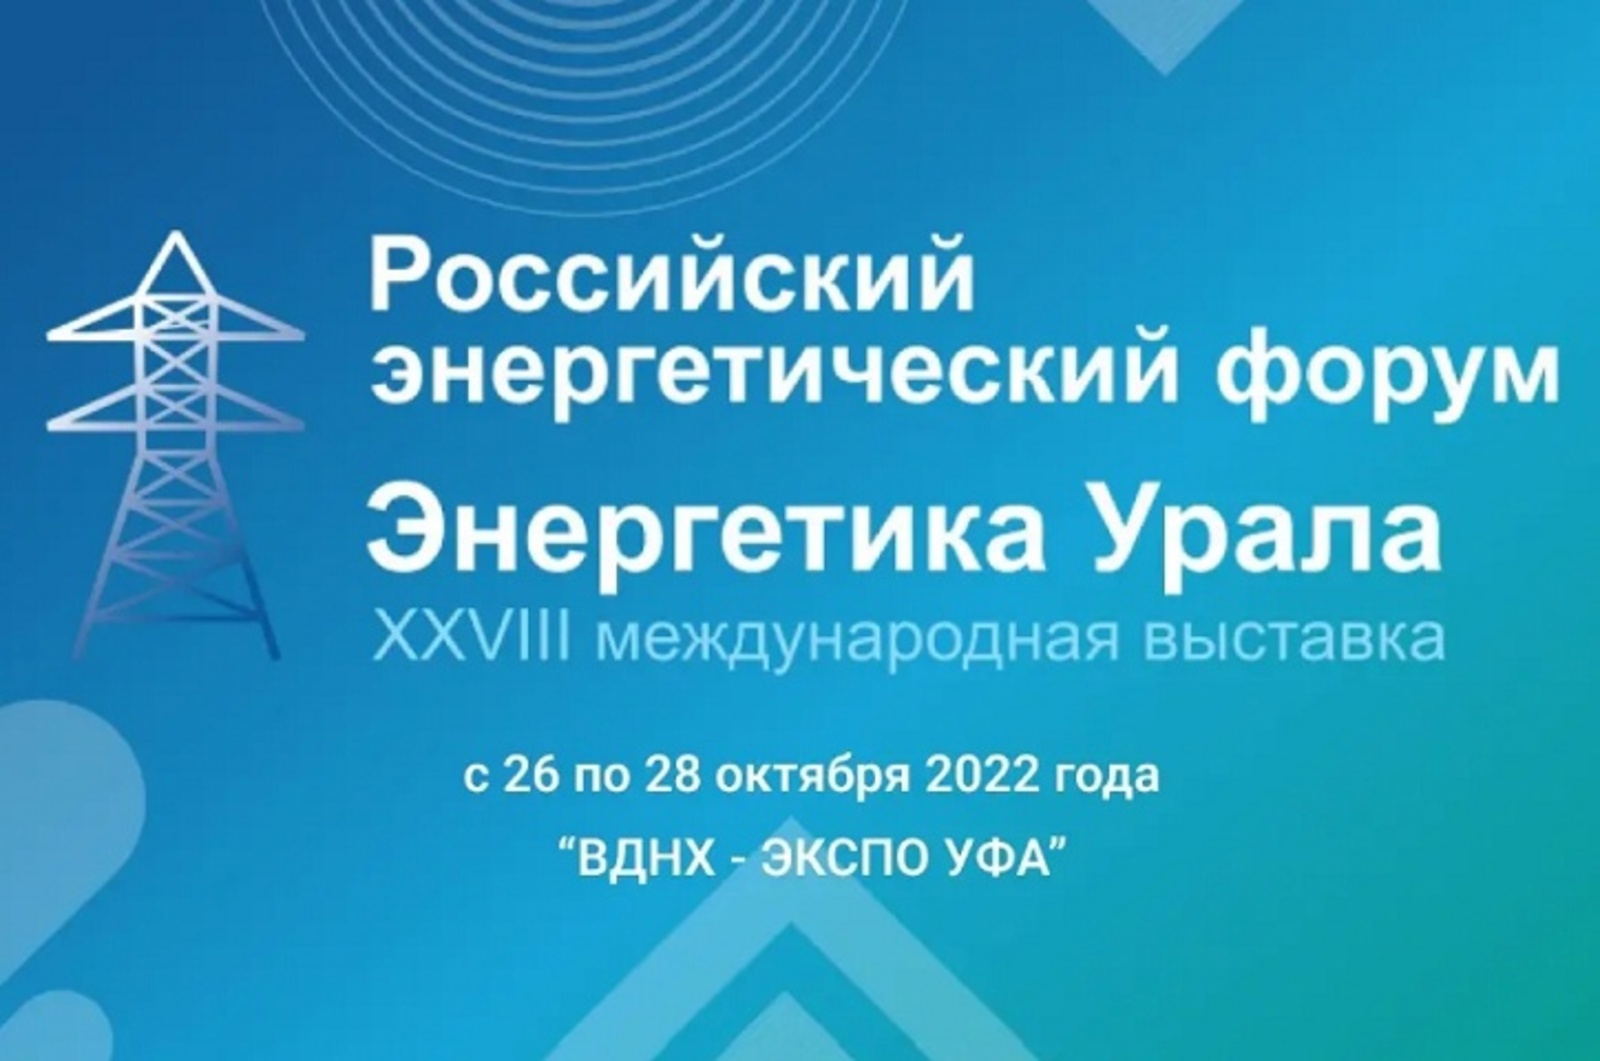 26-28 октября состоятся Российский энергетический форум и международная выставка «Энергетика Урала"